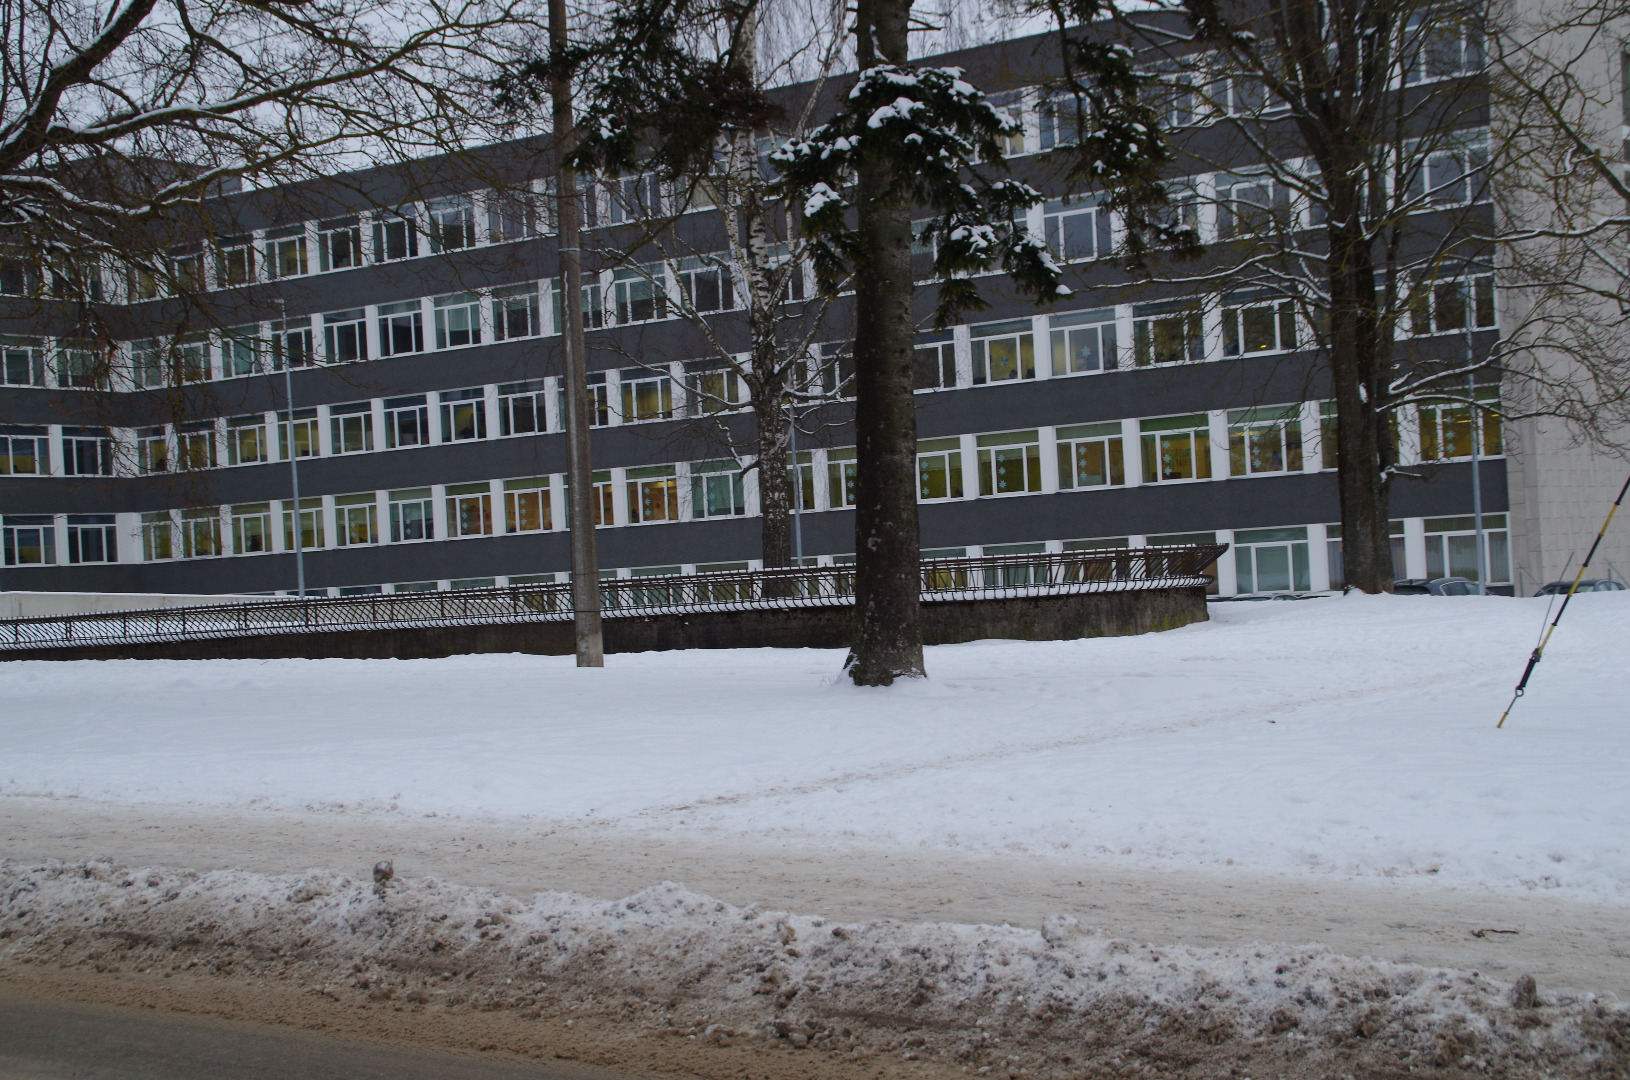 Karlova. Korporatsiooni "Ugala" maja (Tähe 40; asus Väike-Tähe t vastas.)
Tartu, 1920-1930. rephoto